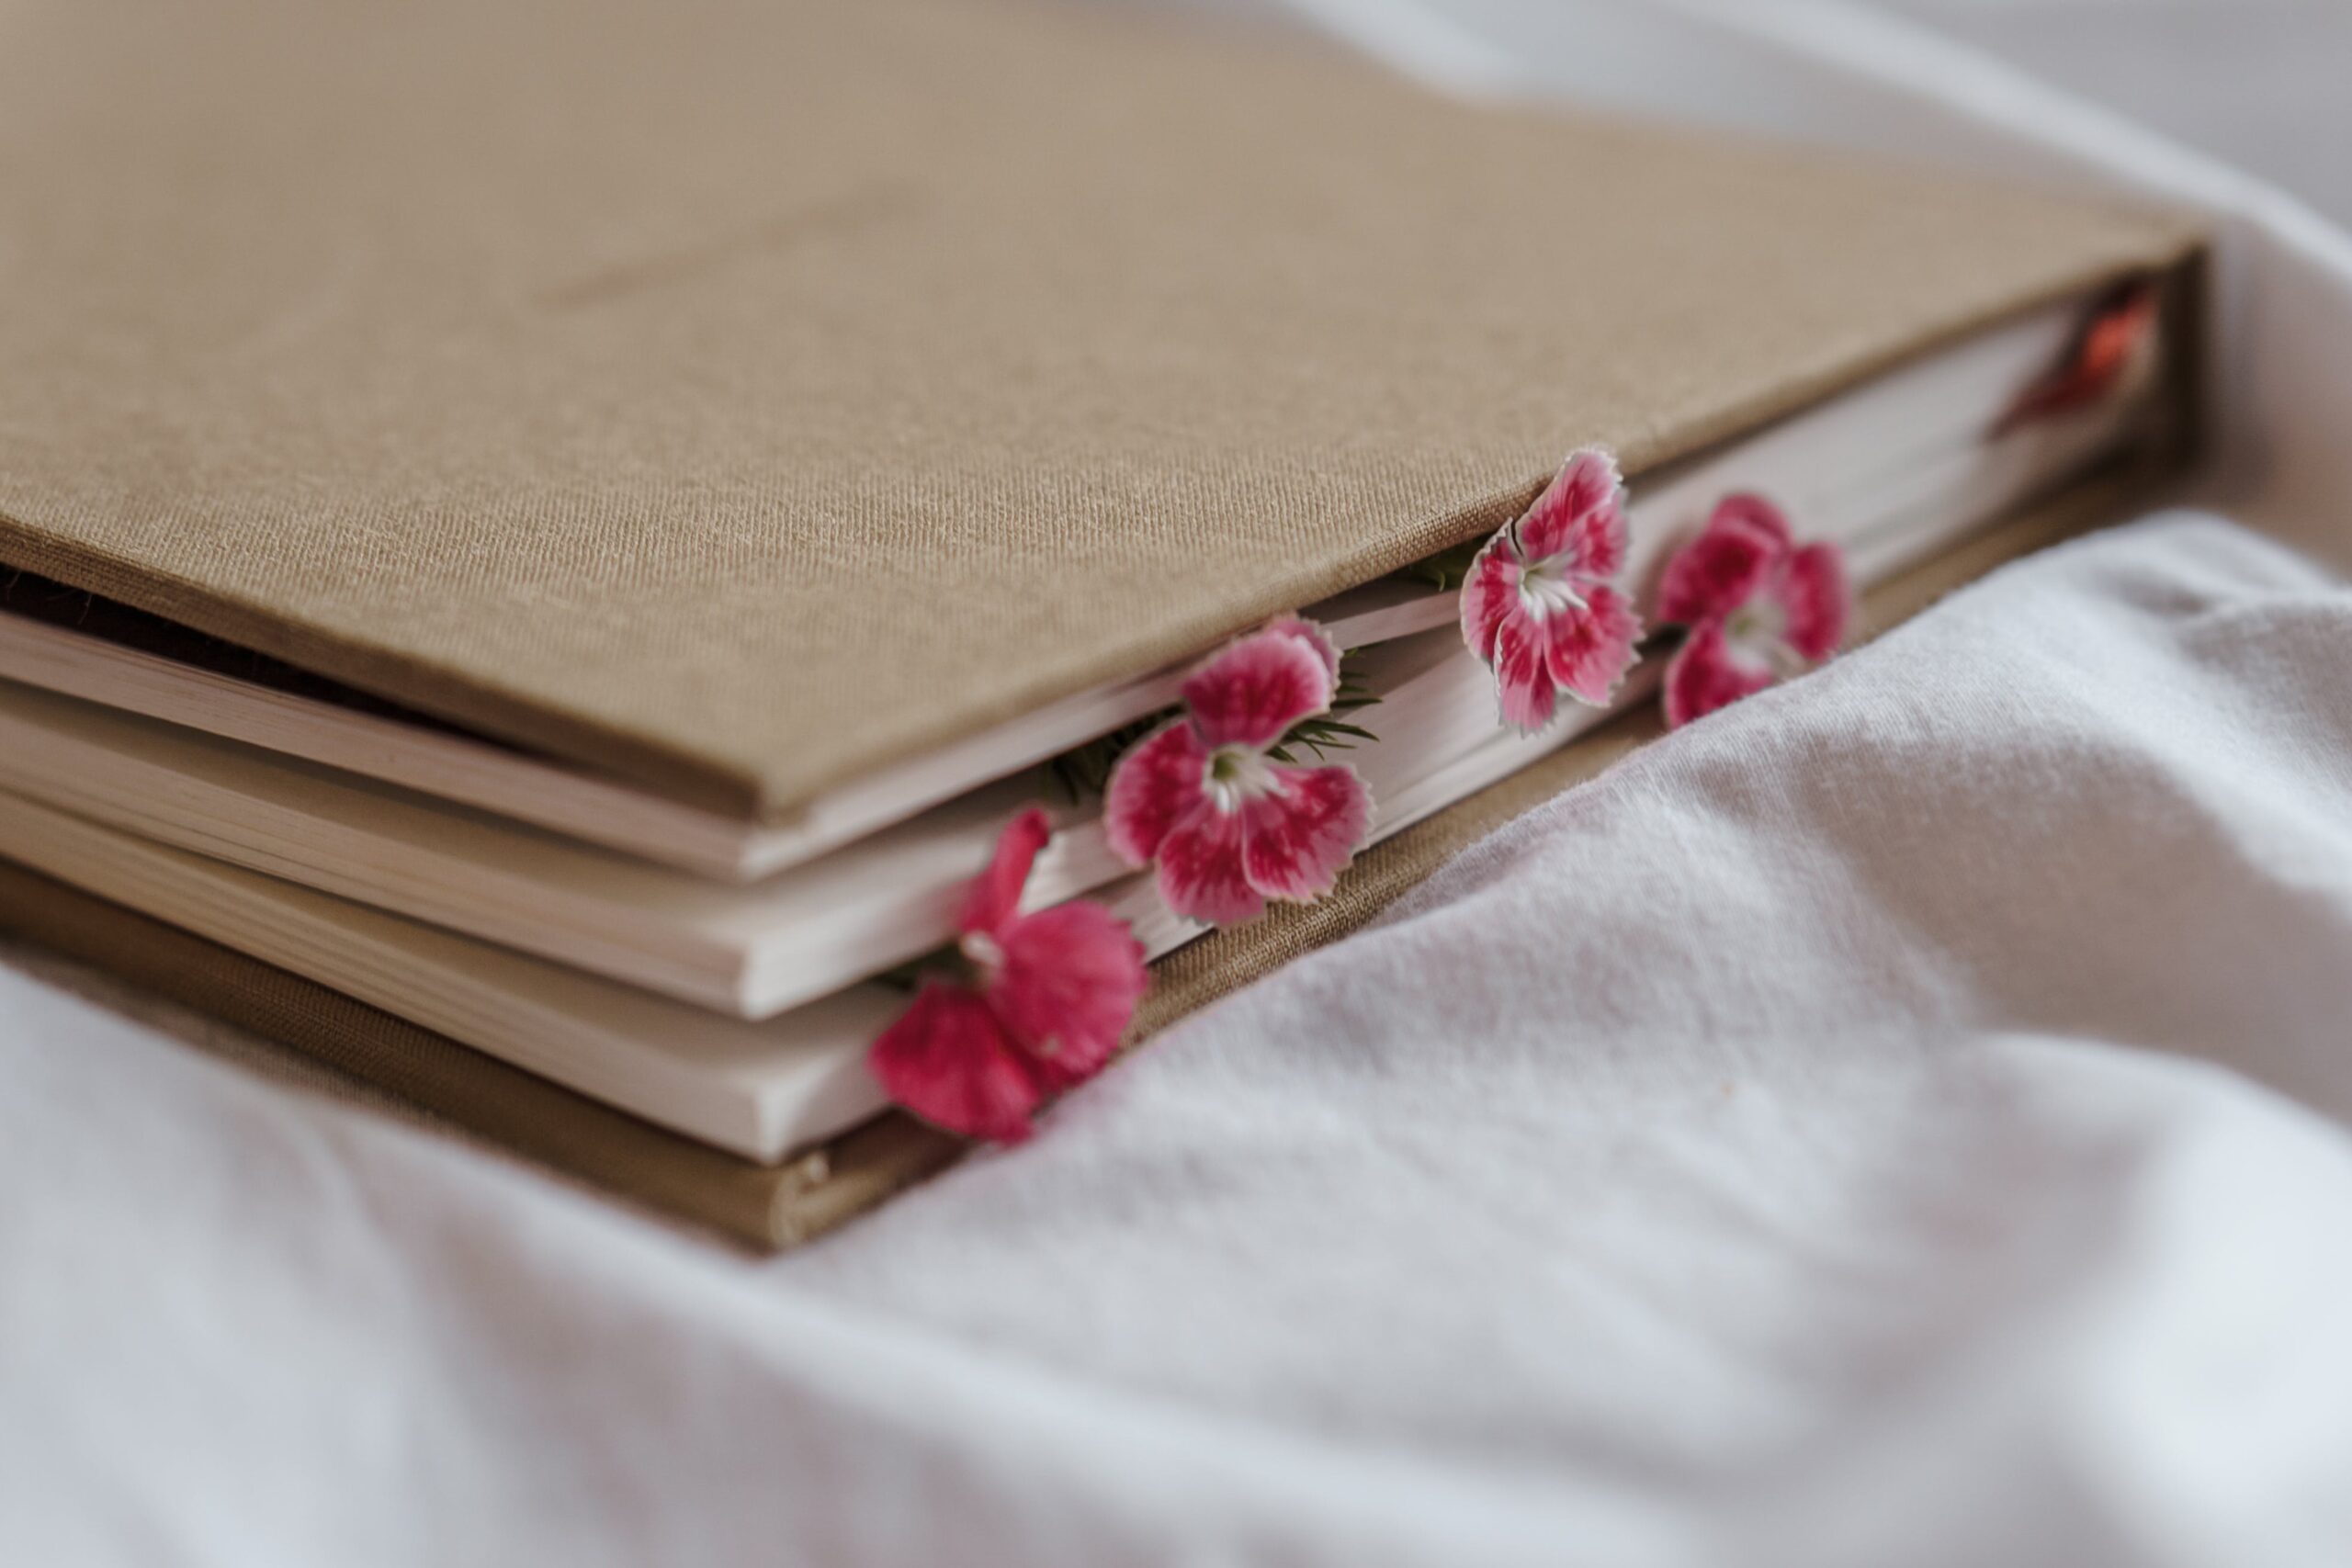 Ein sandfarbenes Journal liegt auf einem Bettlaken, zwischen die Seiten sind rote Blüten gesteckt.